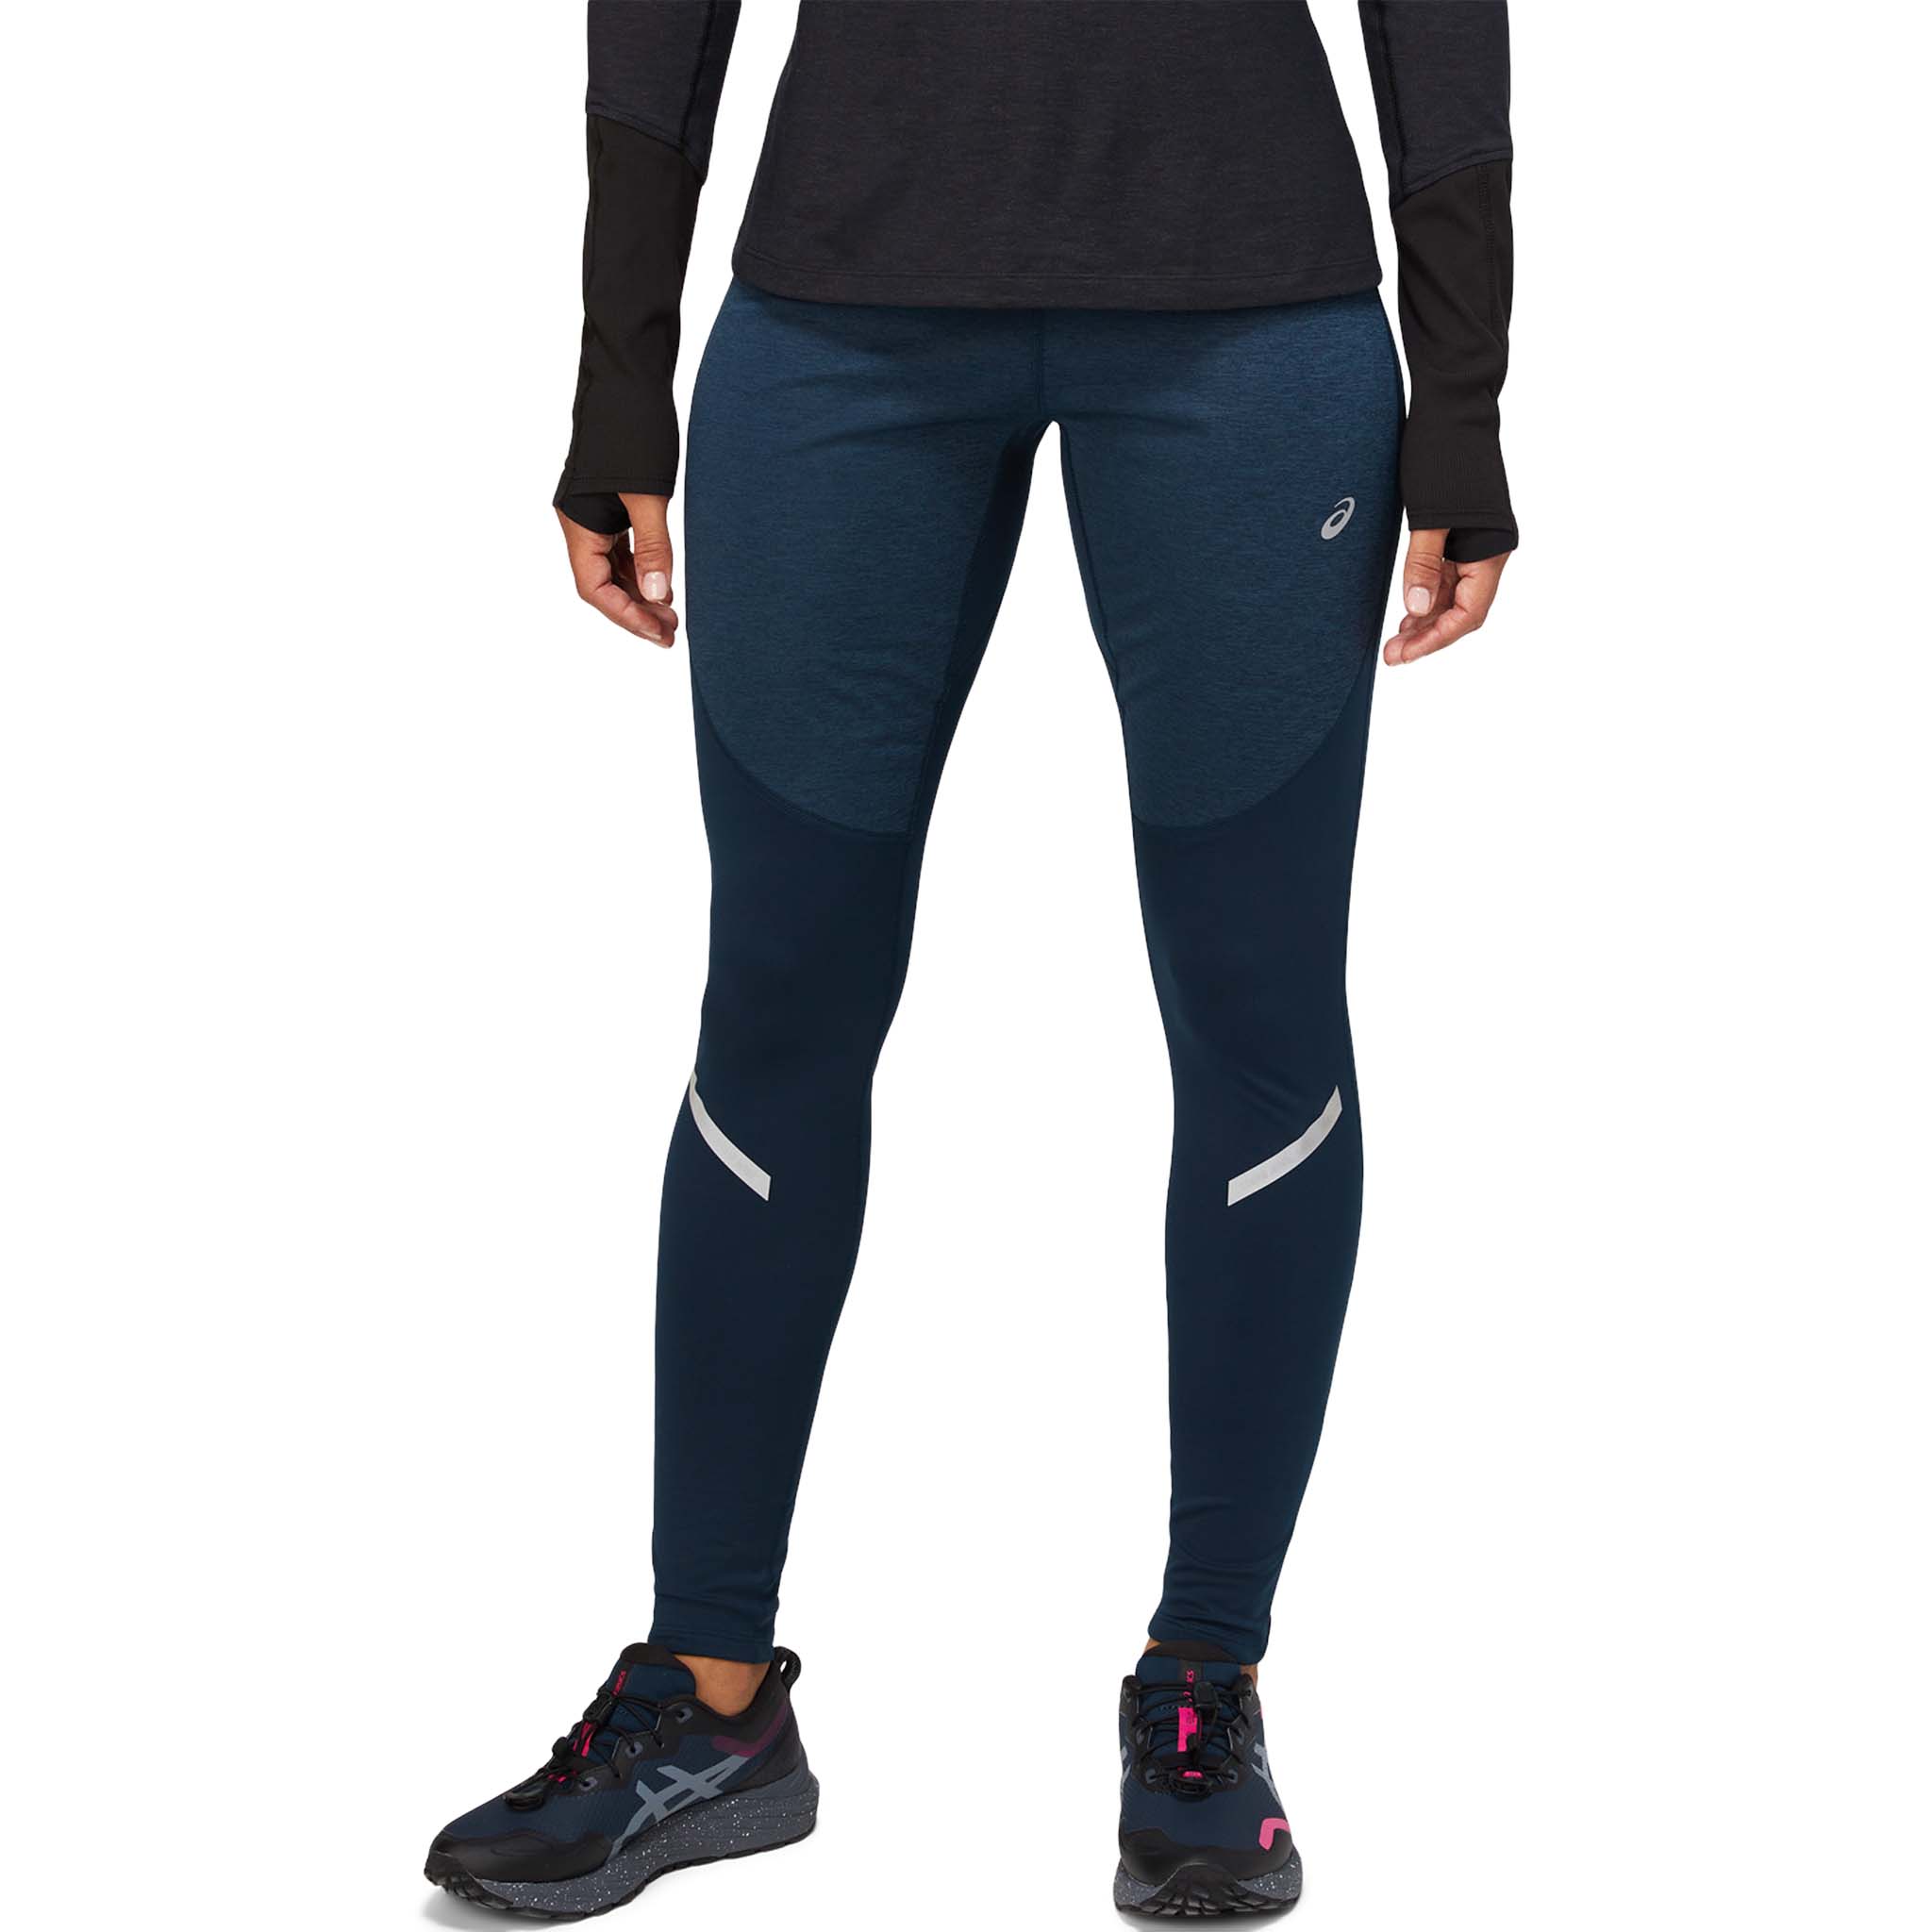 https://www.soccersportfitness.ca/cdn/shop/products/ASICS-Lite-Show-Winter-running-leggings-women-2012C029-403-GF-FT-GLB.jpg?v=1659271406